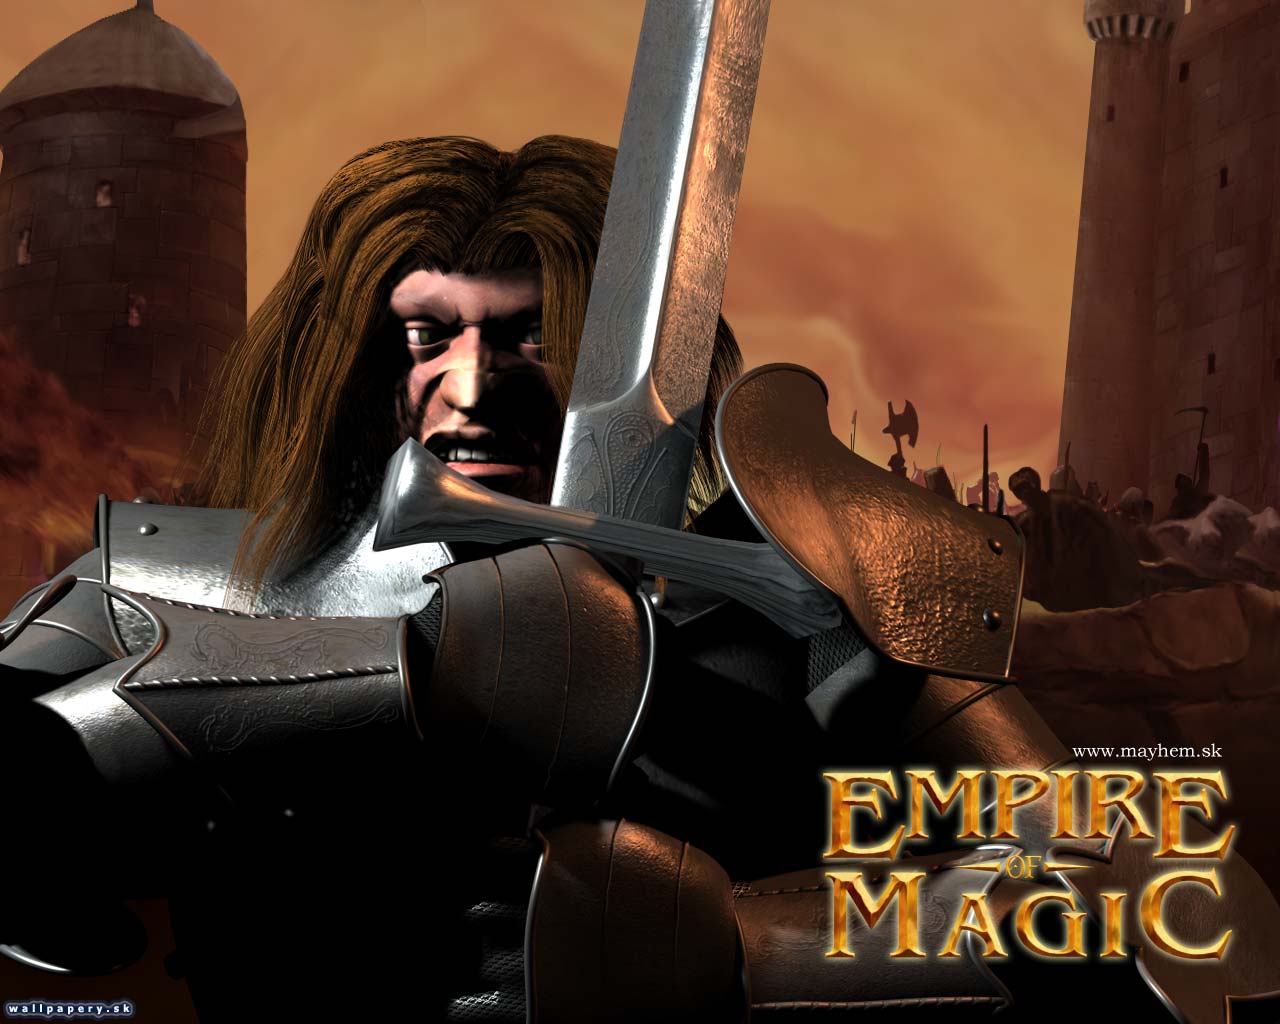 Empire of Magic - wallpaper 6